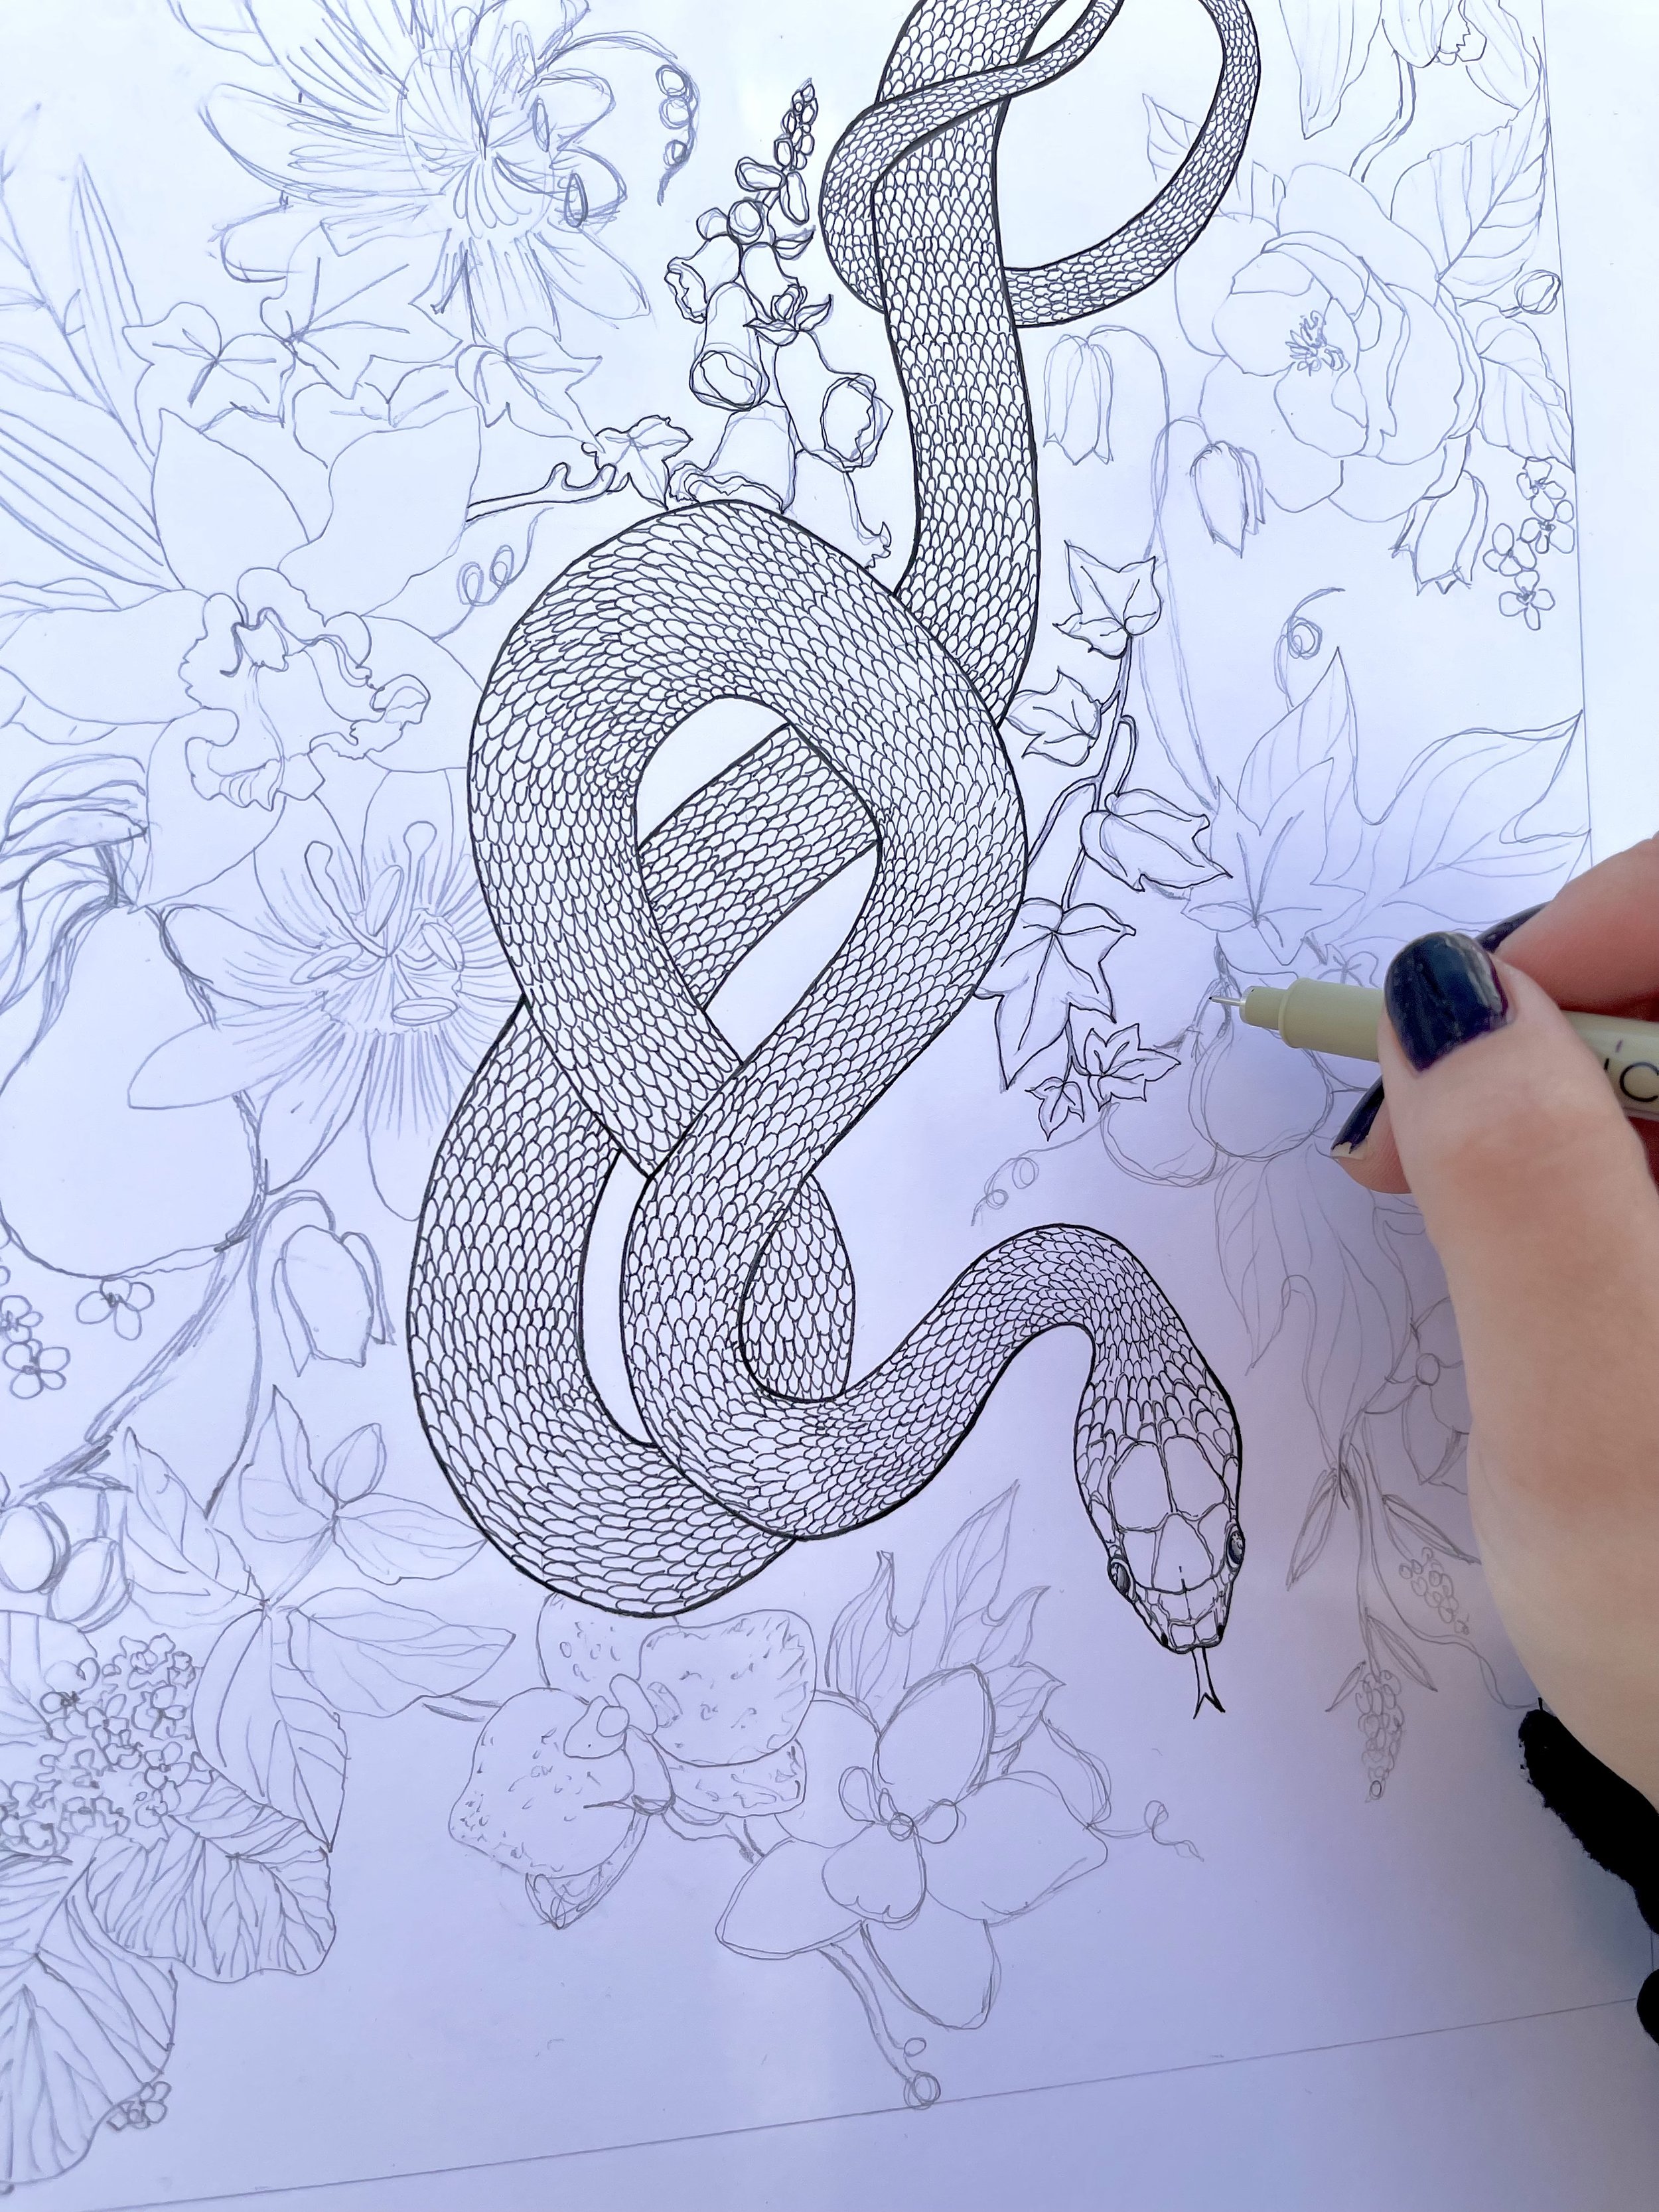 Serpent Illustration in Pen